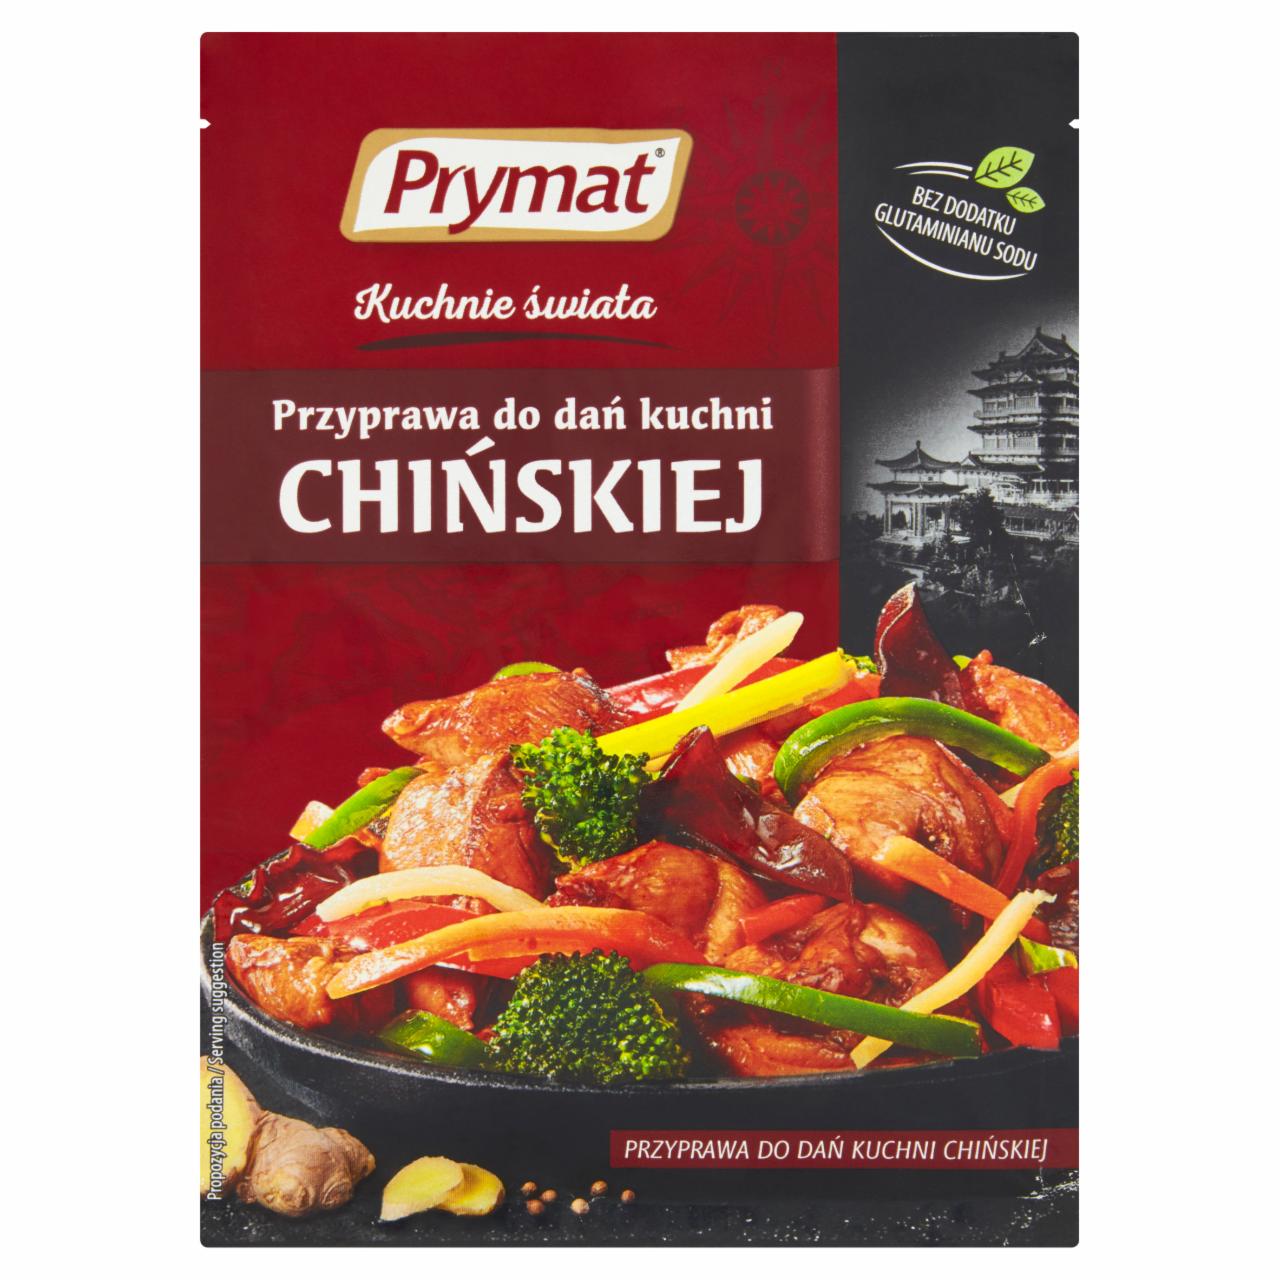 Photo - Prymat Kuchnie świata Seasoning for Chinese Dishes 25 g